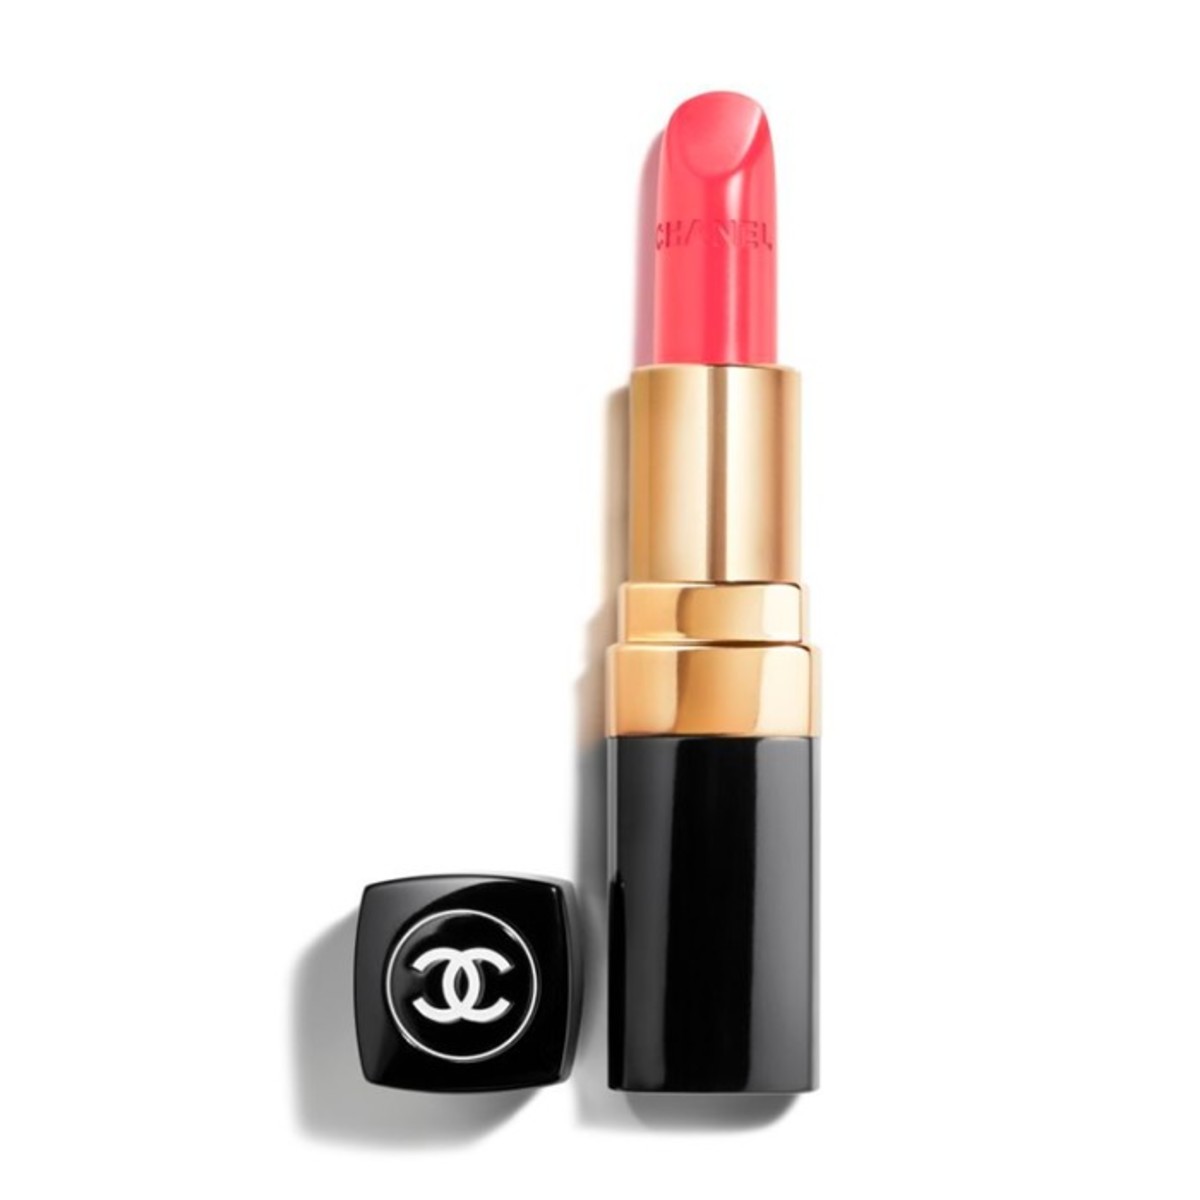 à¸�à¸¥à¸�à¸²à¸£à¸�à¹�à¸�à¸«à¸²à¸£à¸¹à¸�à¸�à¸²à¸�à¸ªà¸³à¸«à¸£à¸±à¸� chanel rouge coco ultra hydrating lip colour 480